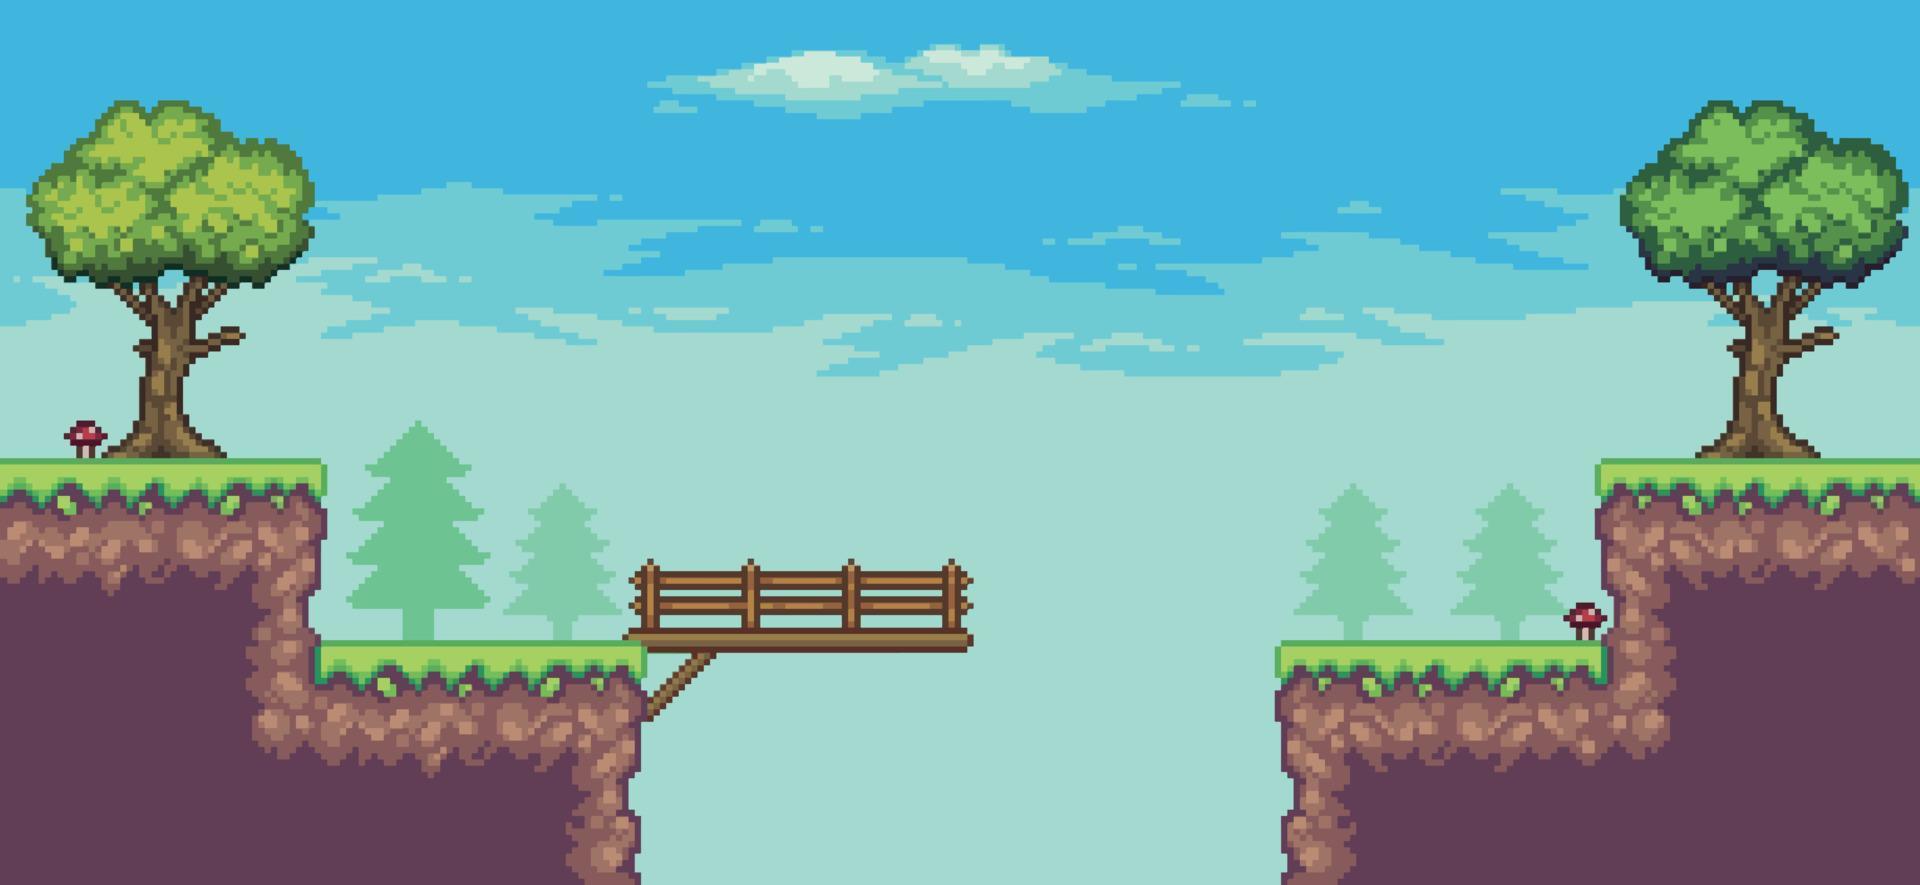 Pixel-Art-Arcade-Spielszene mit Baum, Brücke, Holzbrett und Wolken 8-Bit-Vektorhintergrund vektor